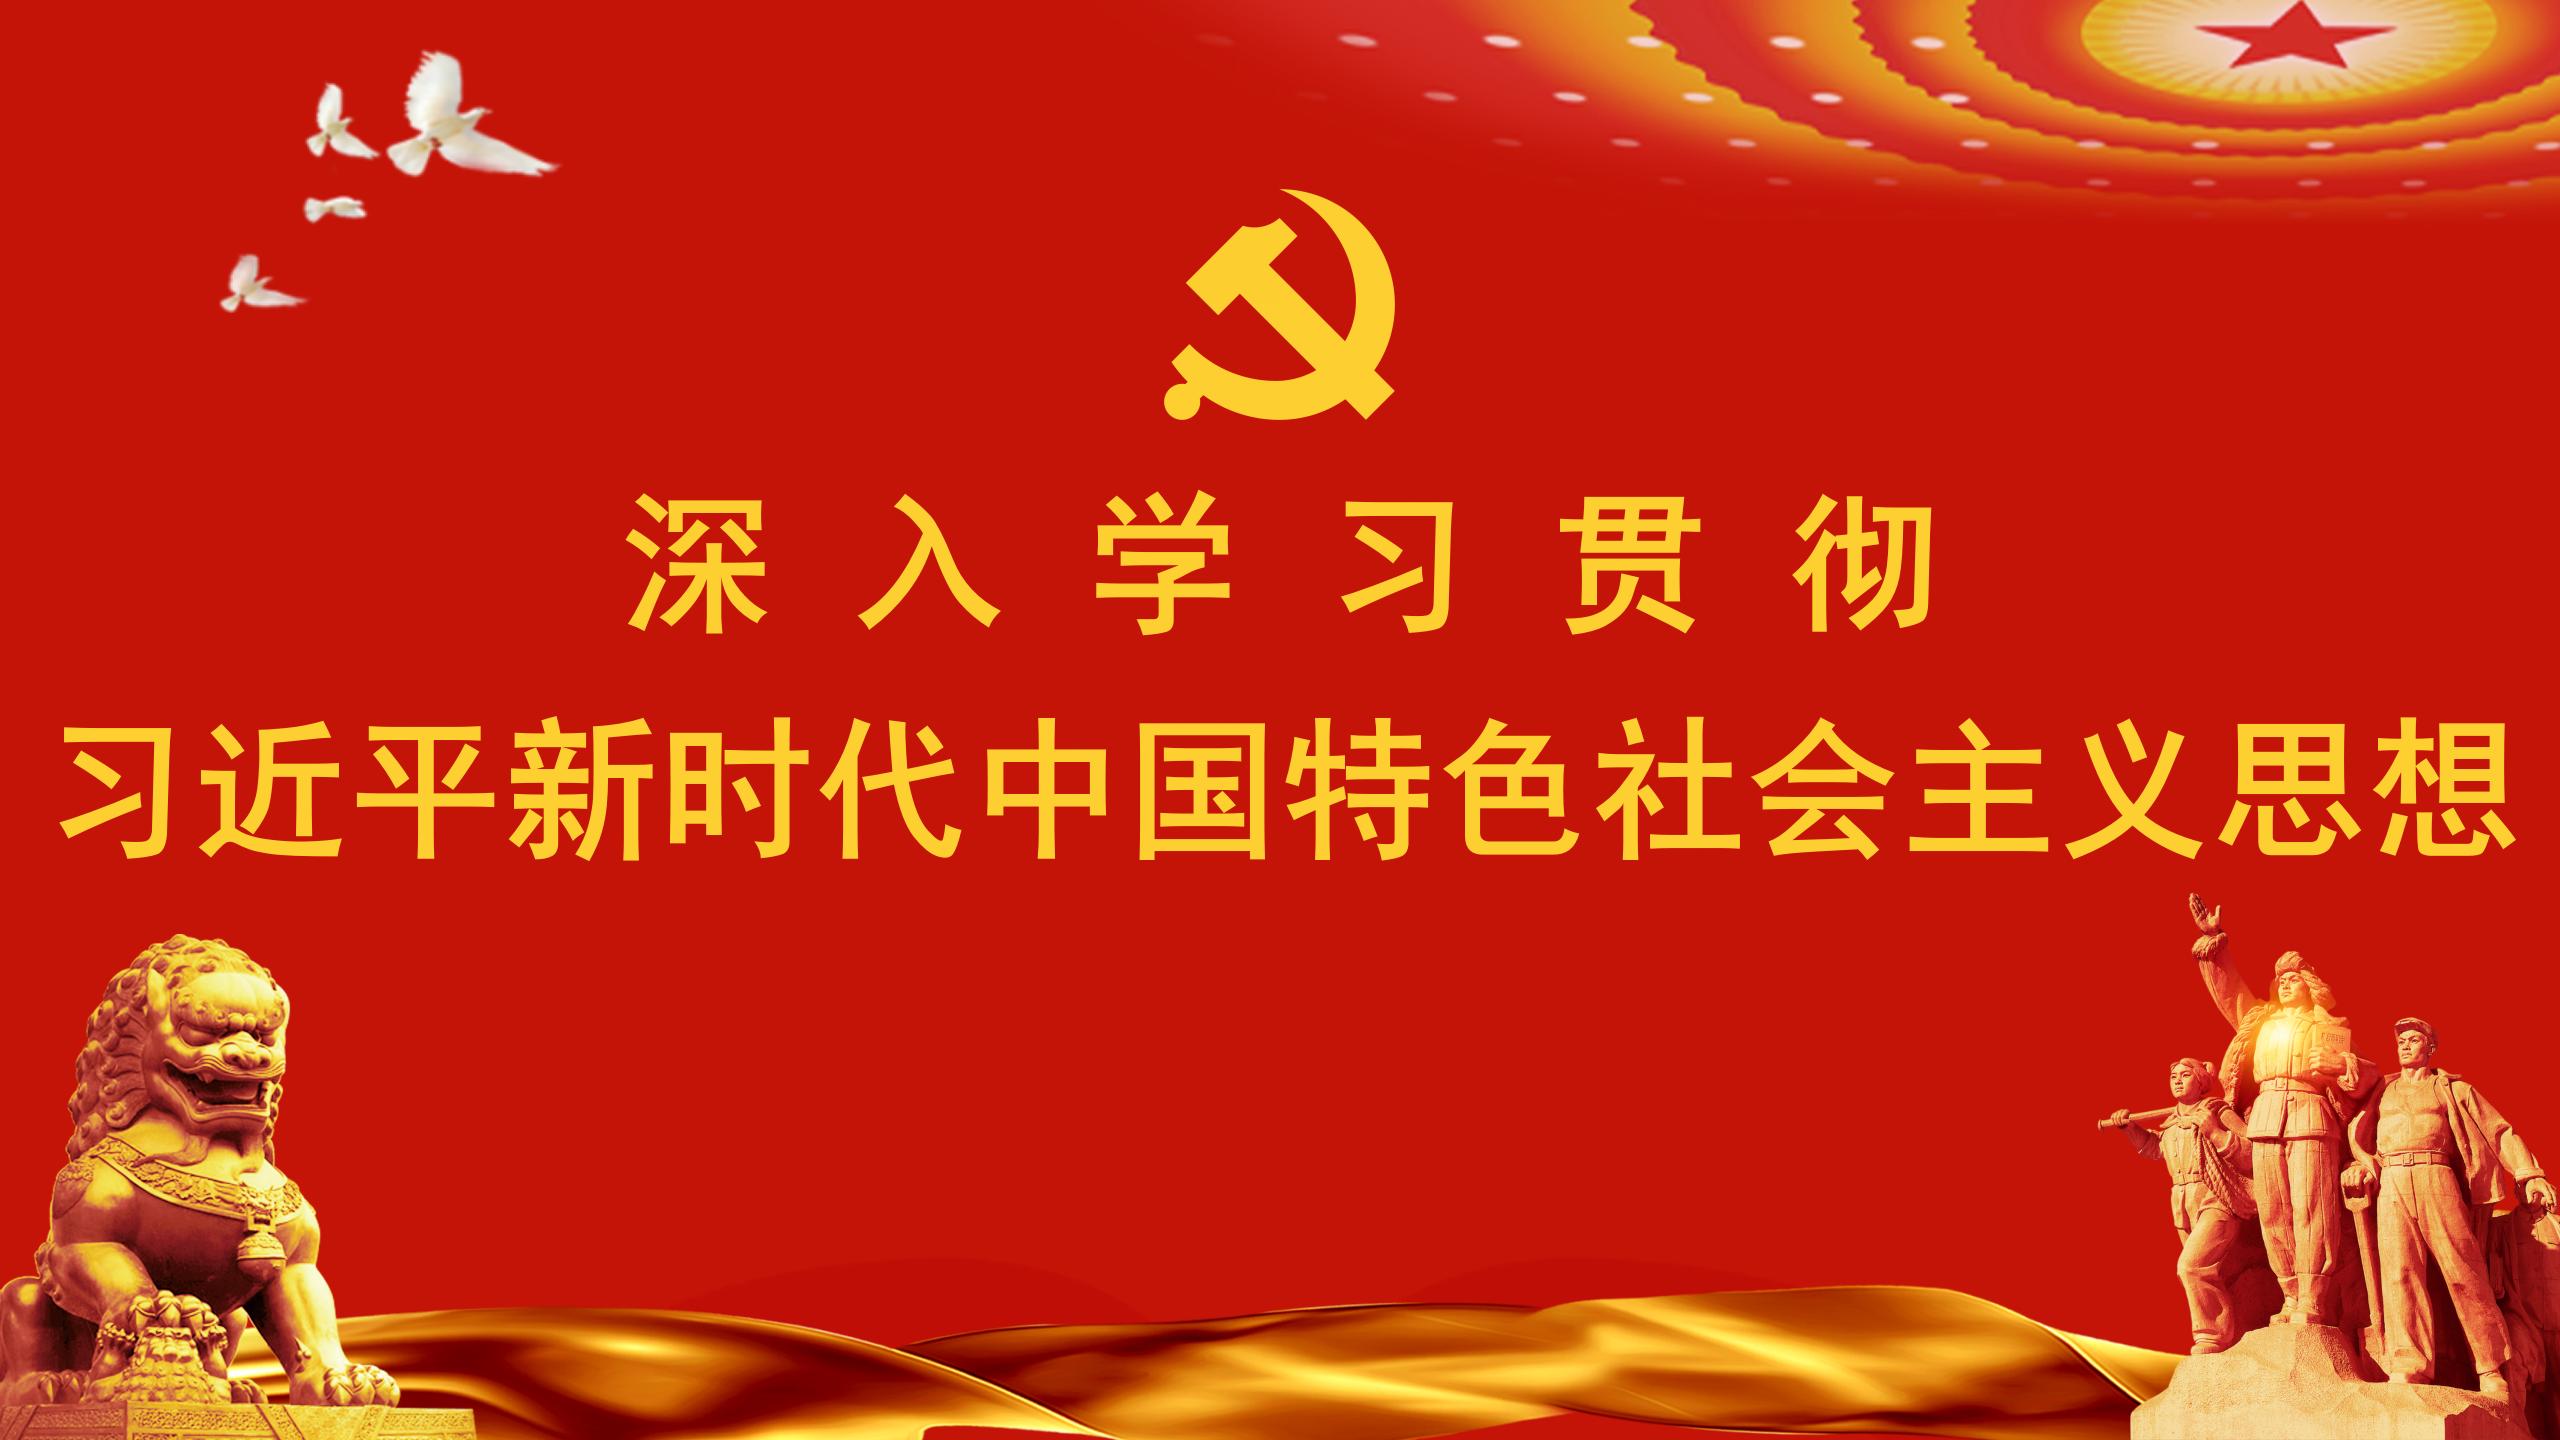 深入学习贯彻习近平新时代中国特色社会主义思想